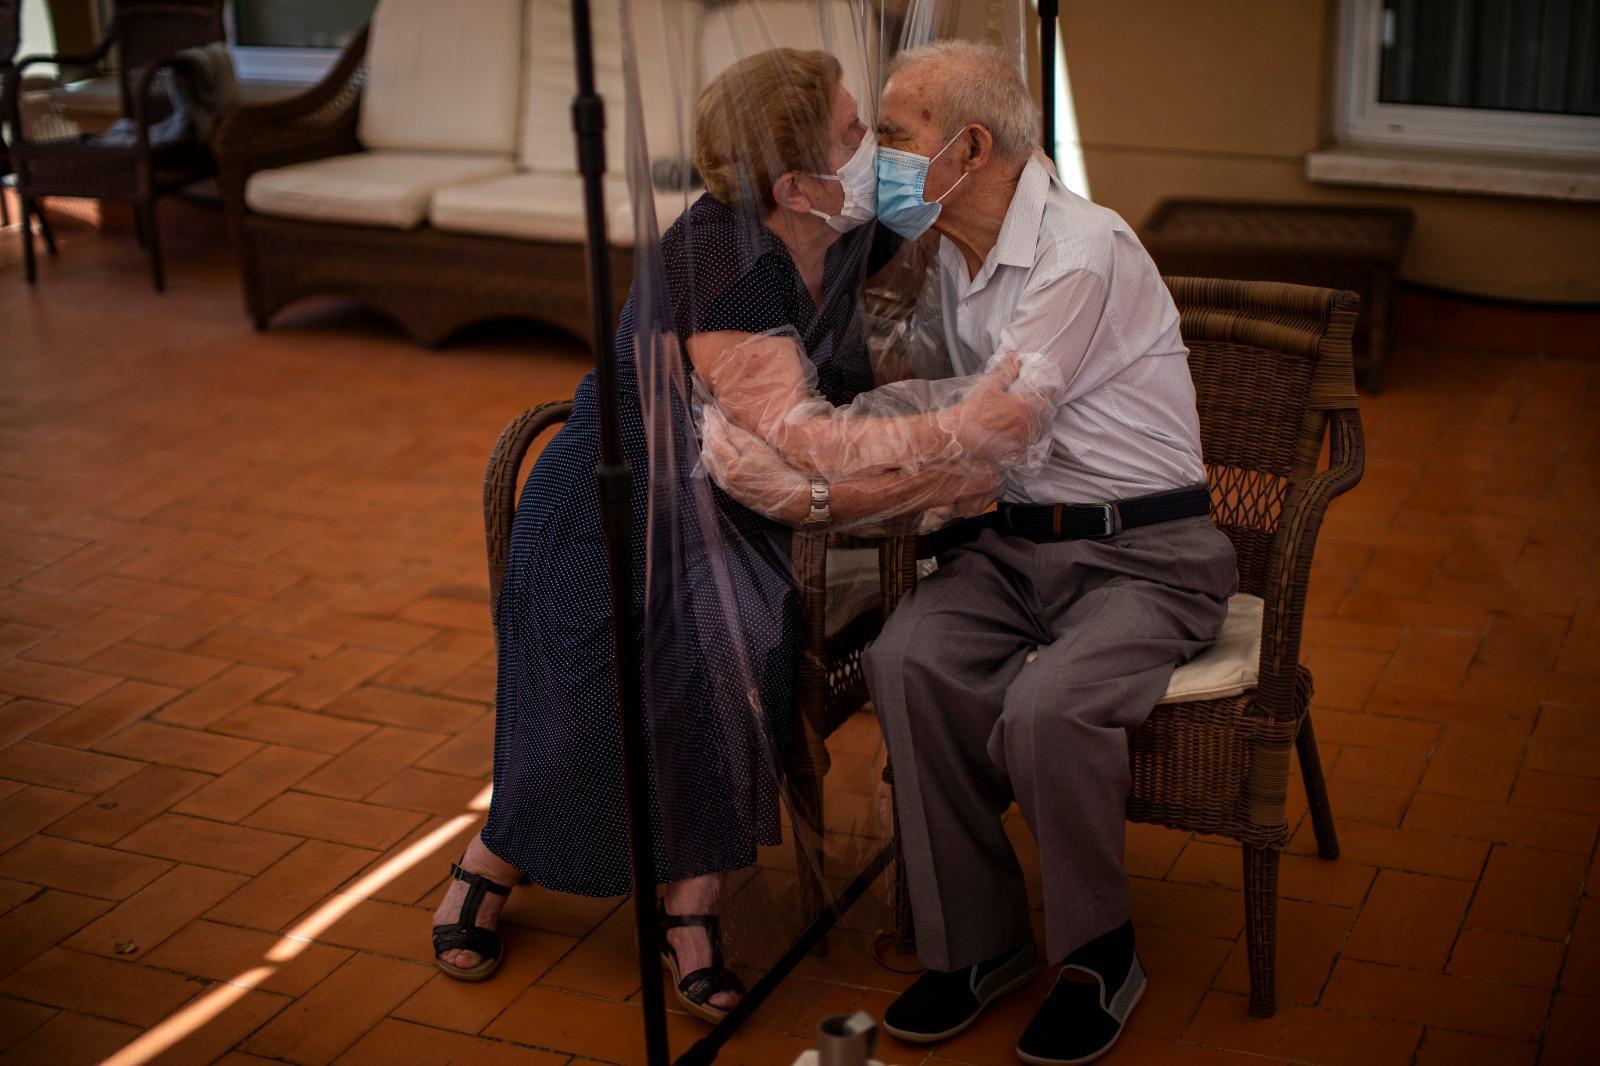 Corona virüs nedeniyle 102 gün ayrı kalan yaşlı çiftin kavuştuğu an